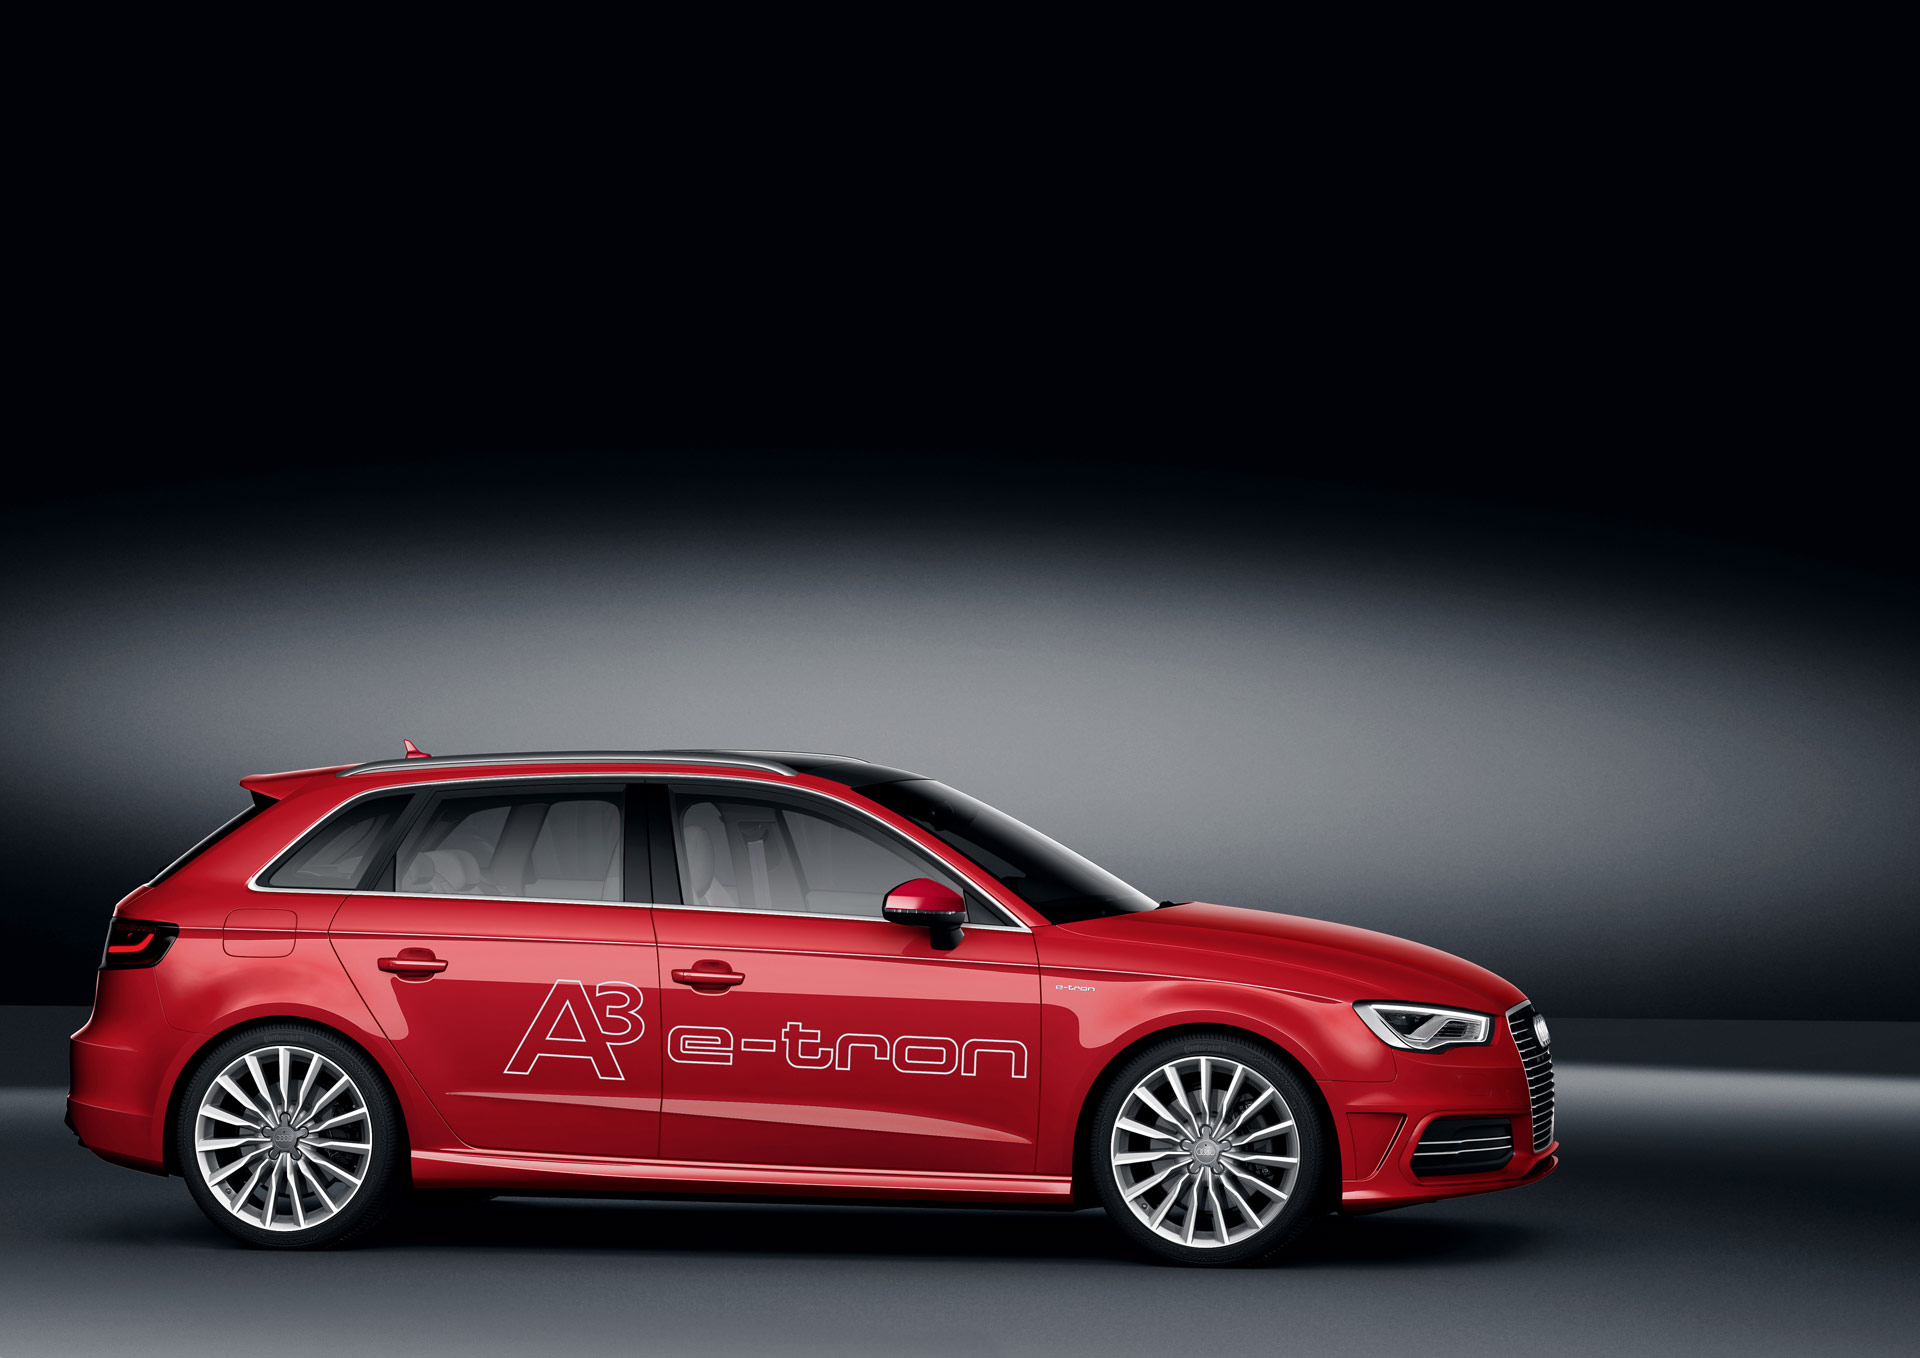 2013 Audi A3 e-tron